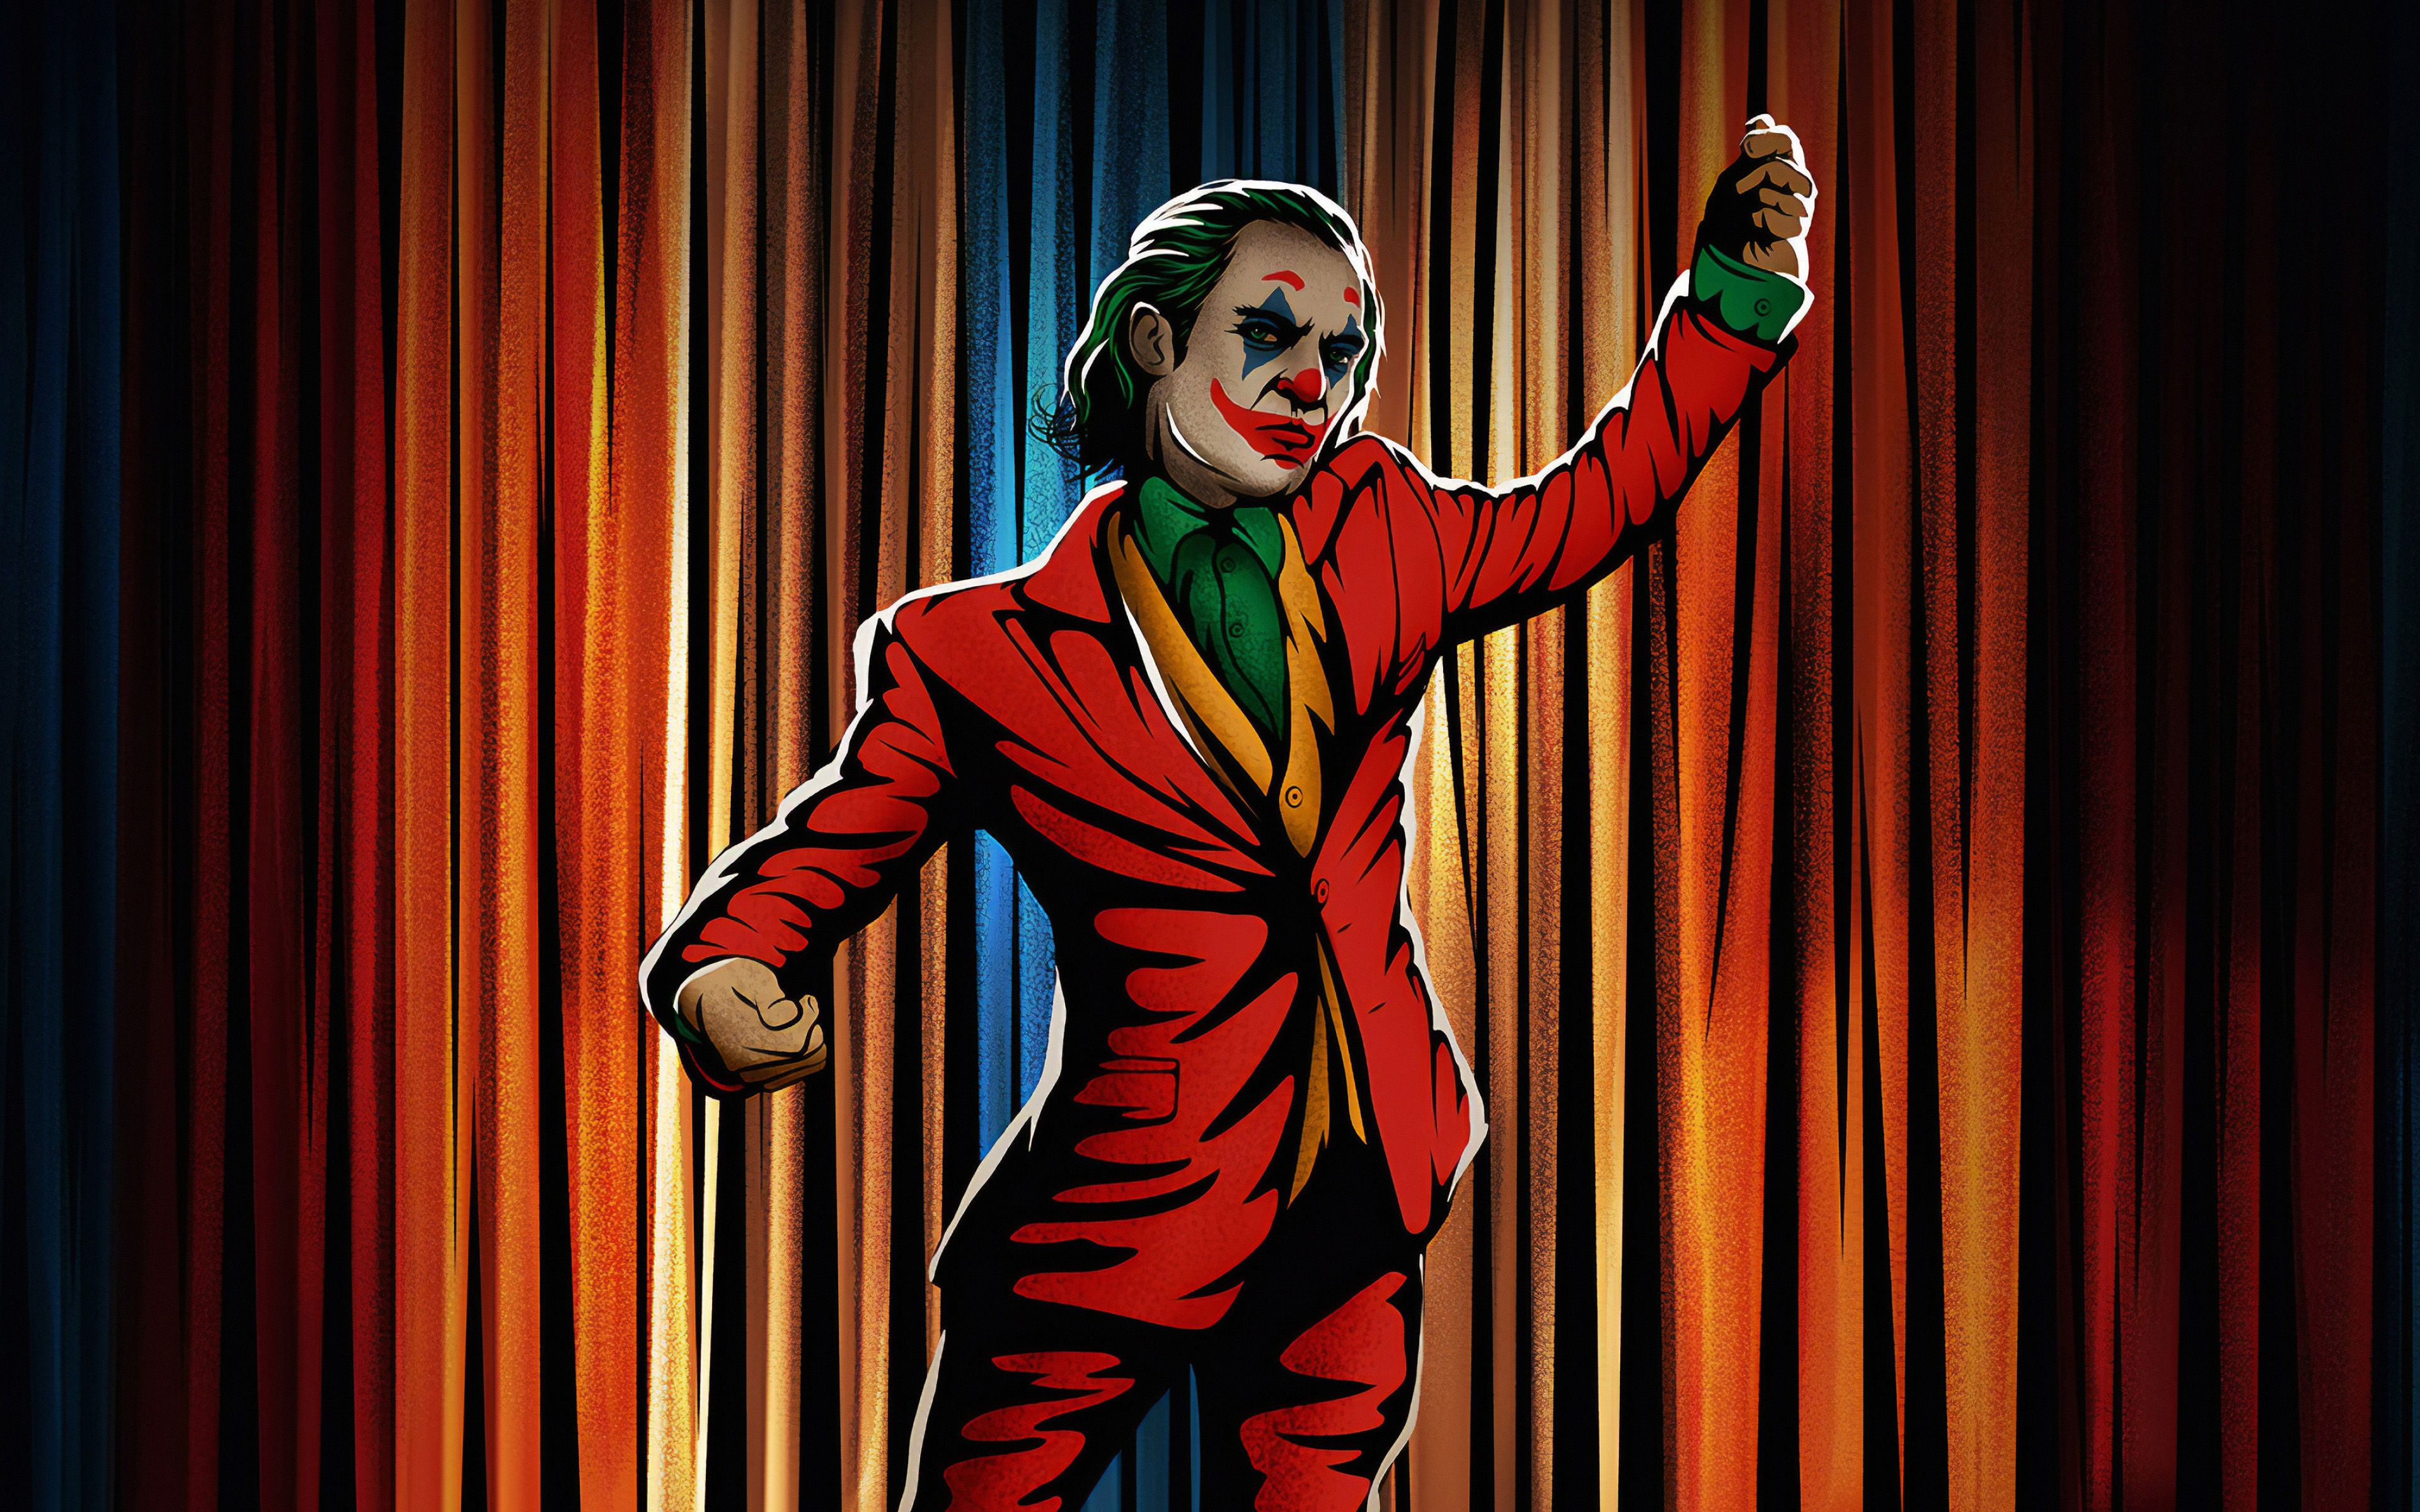 Download wallpaper Dancing Joker, 4k, retro art, supervillain, fan art, creative, Joker 4K, artwork, Joker for desktop with resolution 3840x2400. High Quality HD picture wallpaper